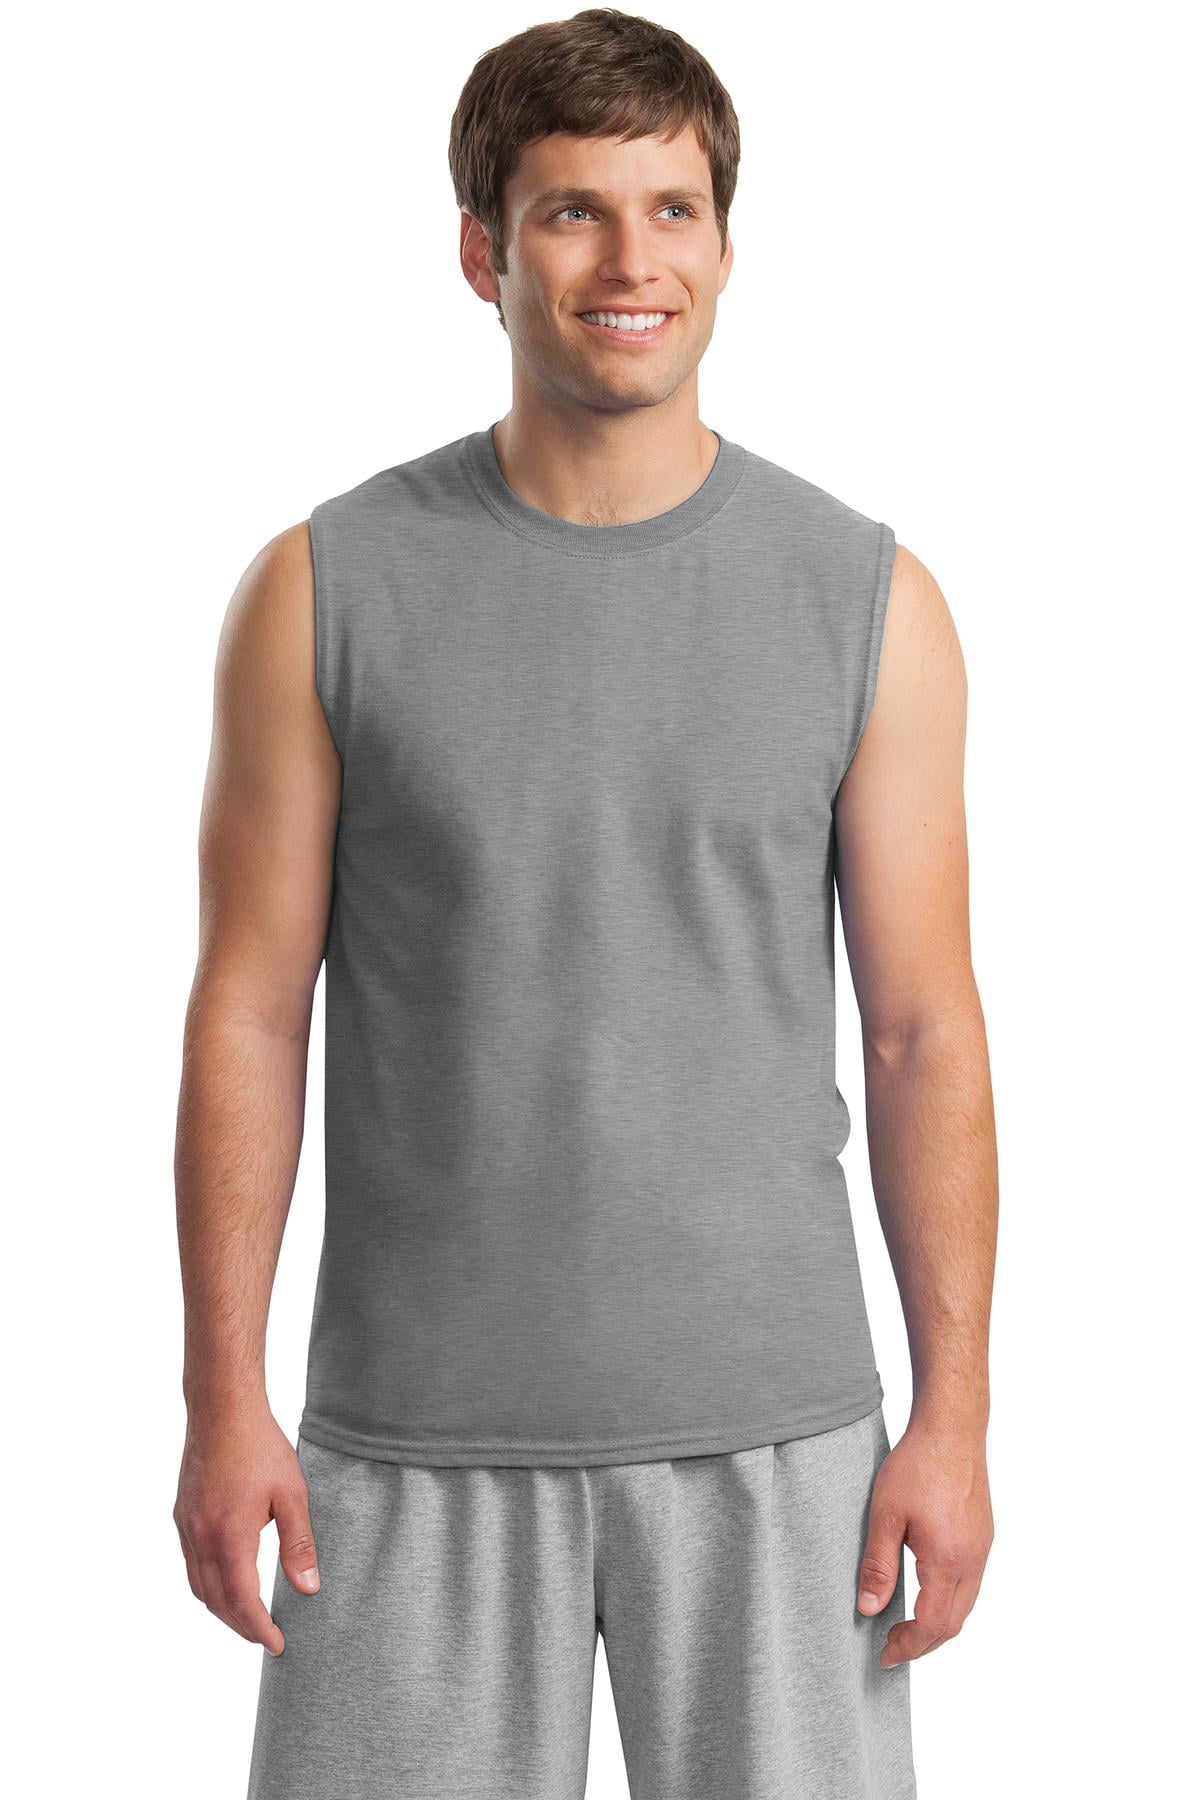 Gildan Men's Ultra Cotton Sleeveless T-Shirt - 2700 - Walmart.com